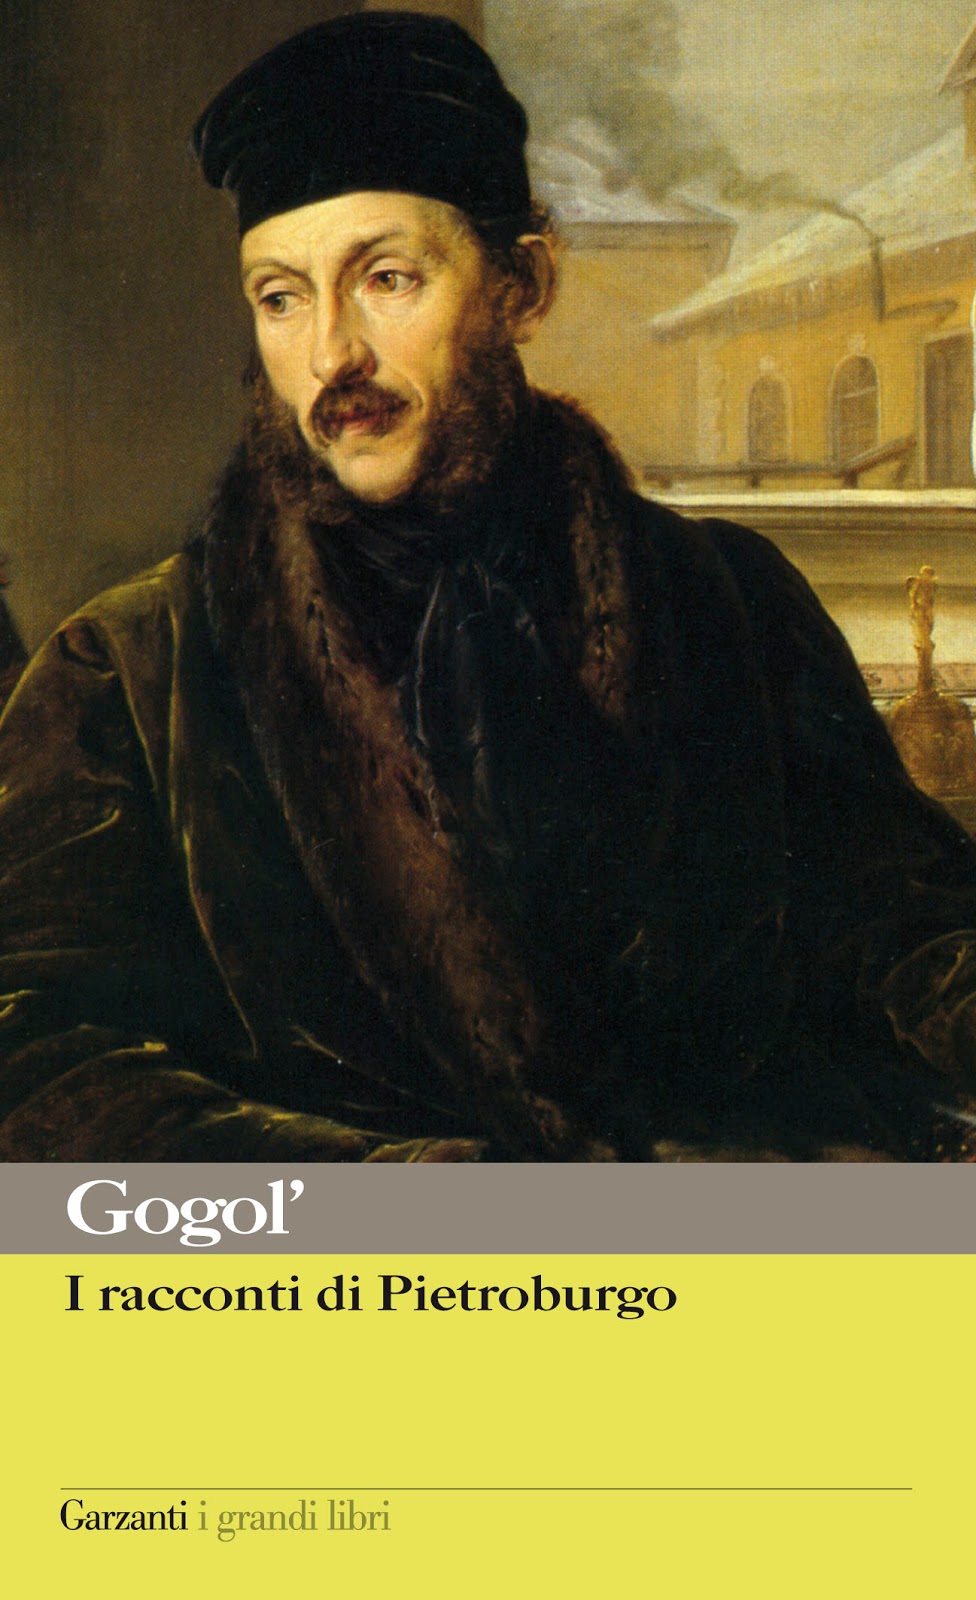 CriticaLetteraria: La sfolgorante invenzione del racconto di Gogol